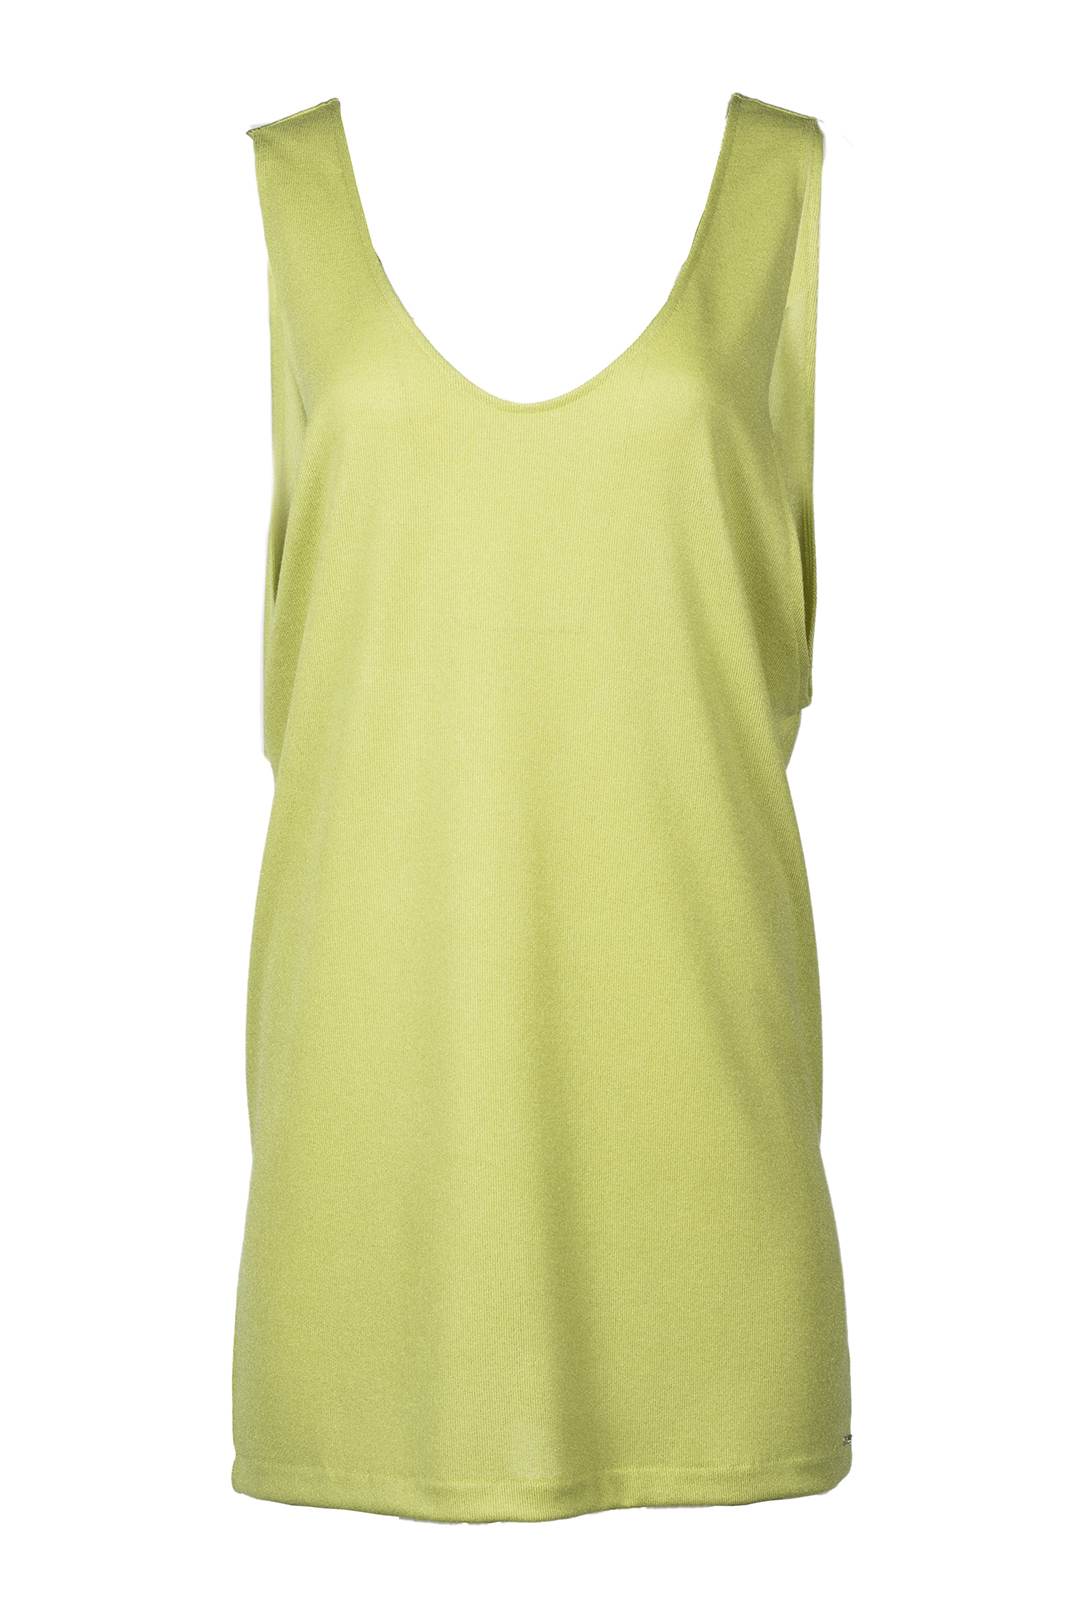 Neon yellow scoop back dress | Carey